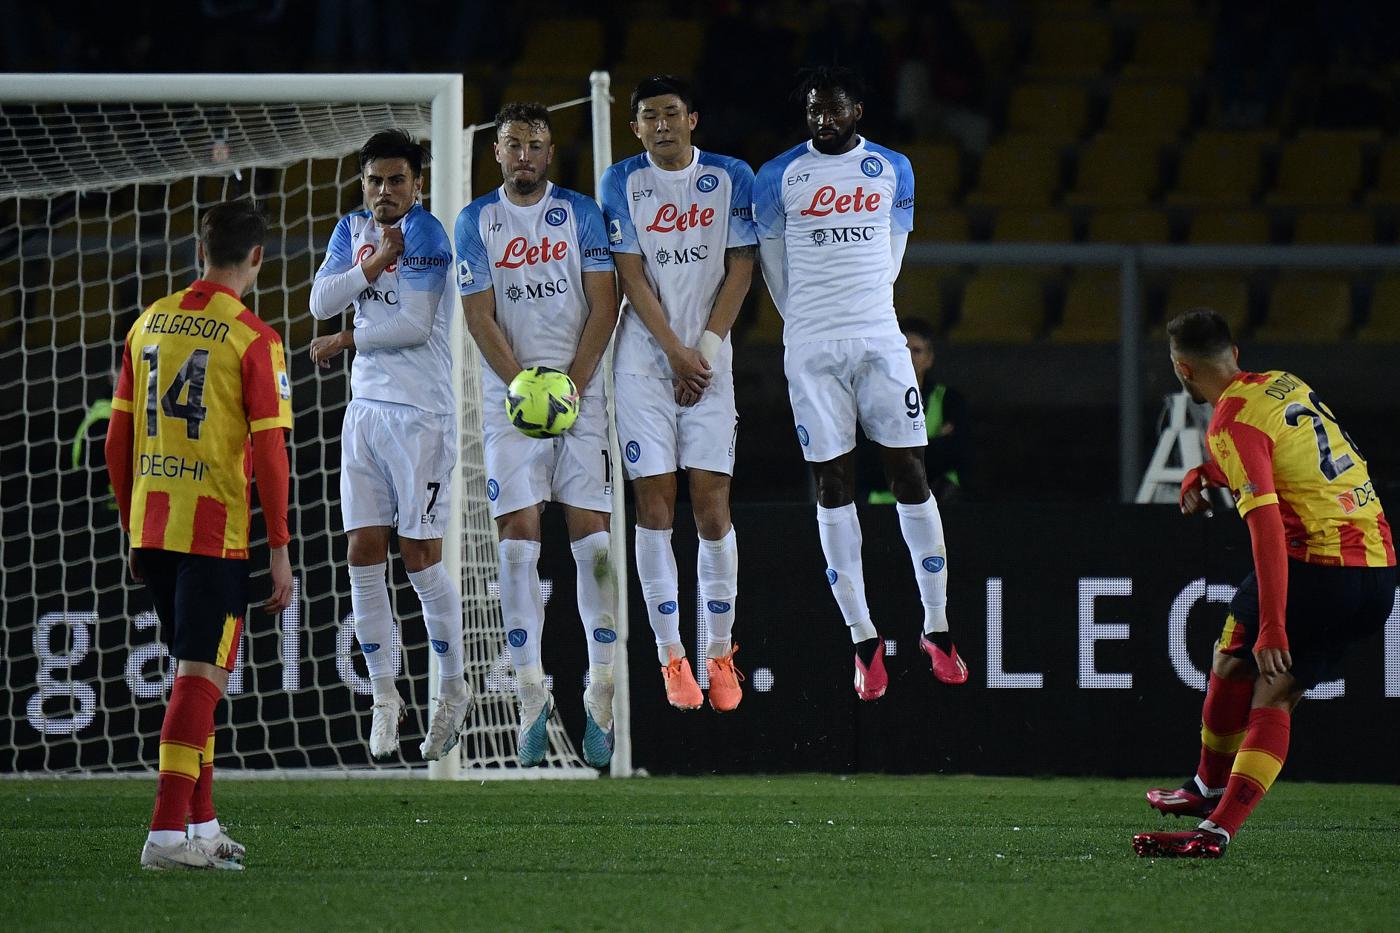 Lecce v Napoli - 1:2. Mistrzostwa Włoch, runda 29. Przegląd meczu, statystyki.